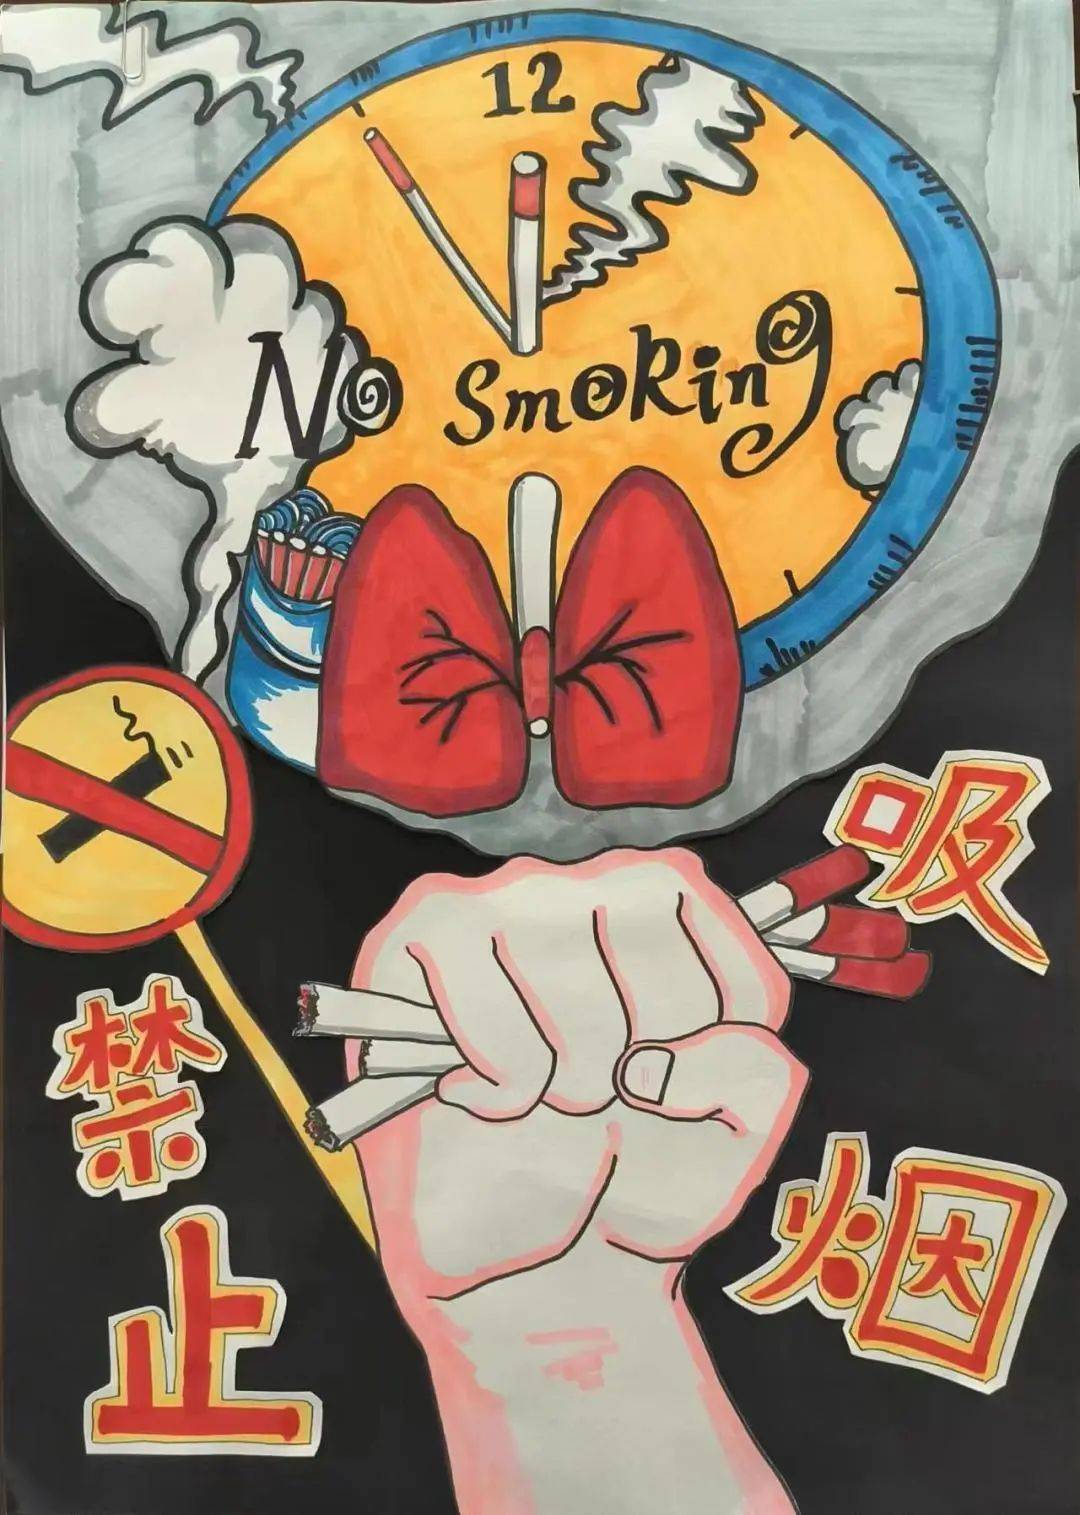 禁止抽烟的画画图片图片